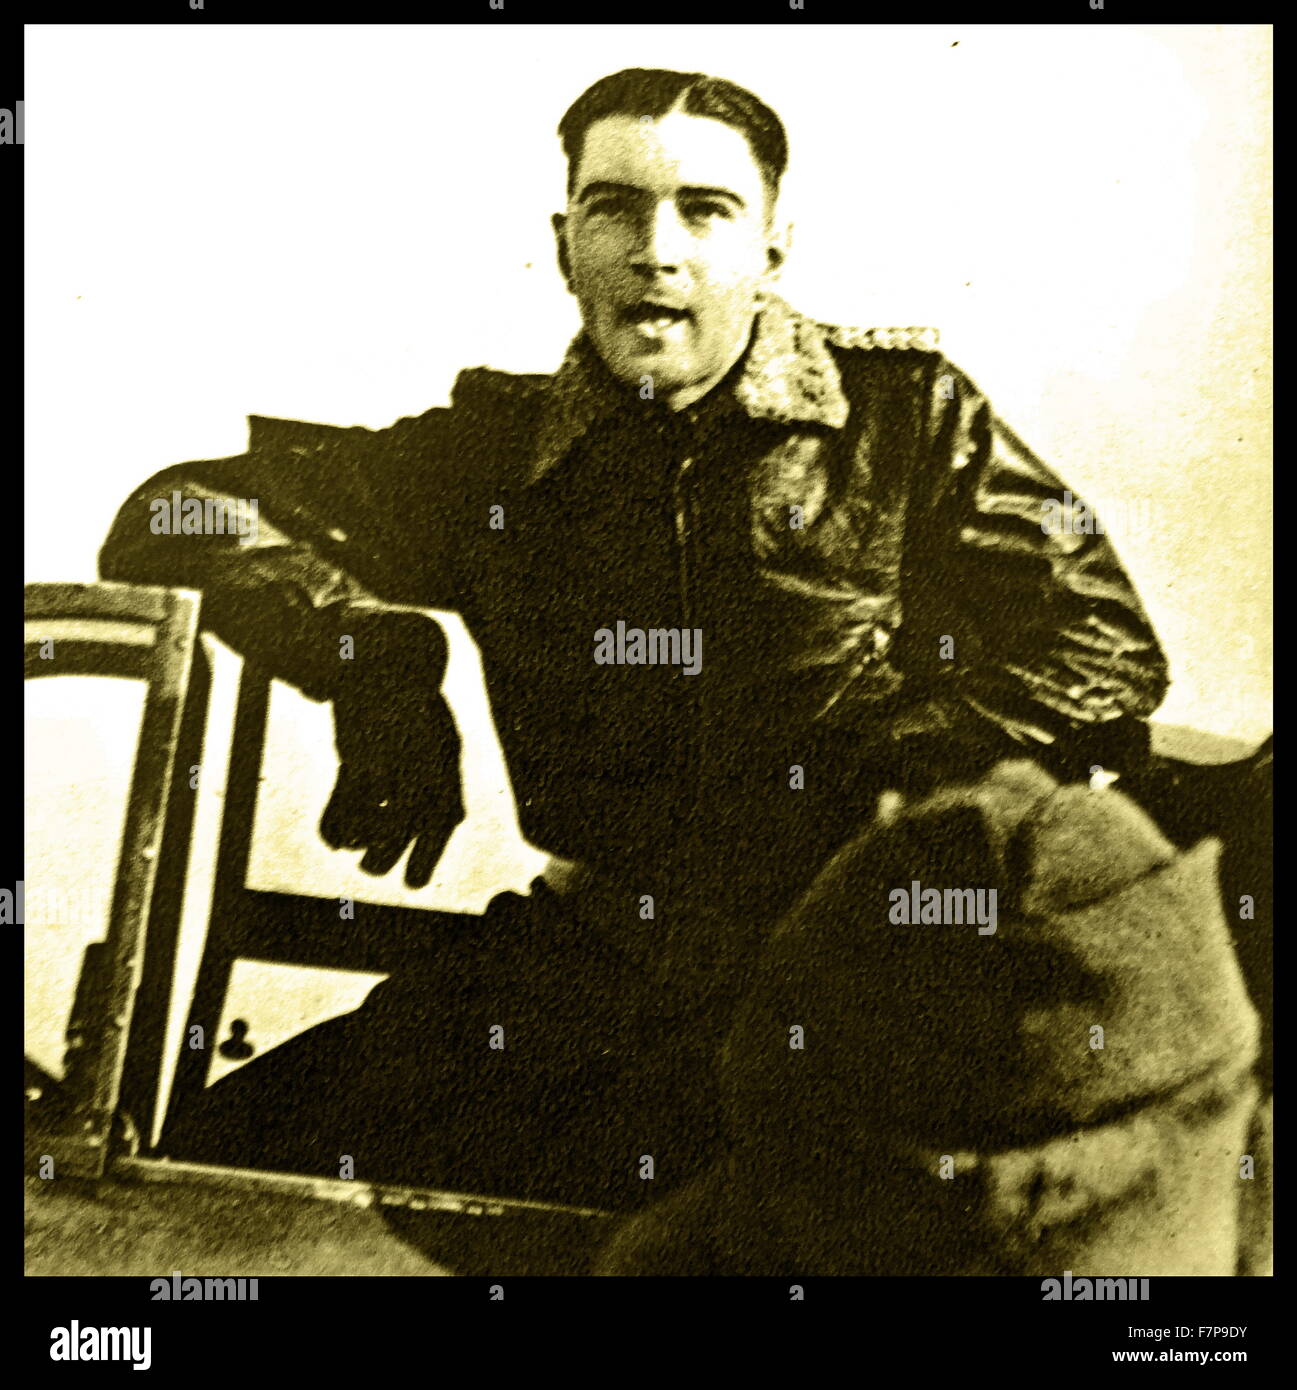 Werner Möiders formó parte de la Luftwaffe alemana "' (aviación) durante la Segunda Guerra Mundial. Fecha c1940 Foto de stock